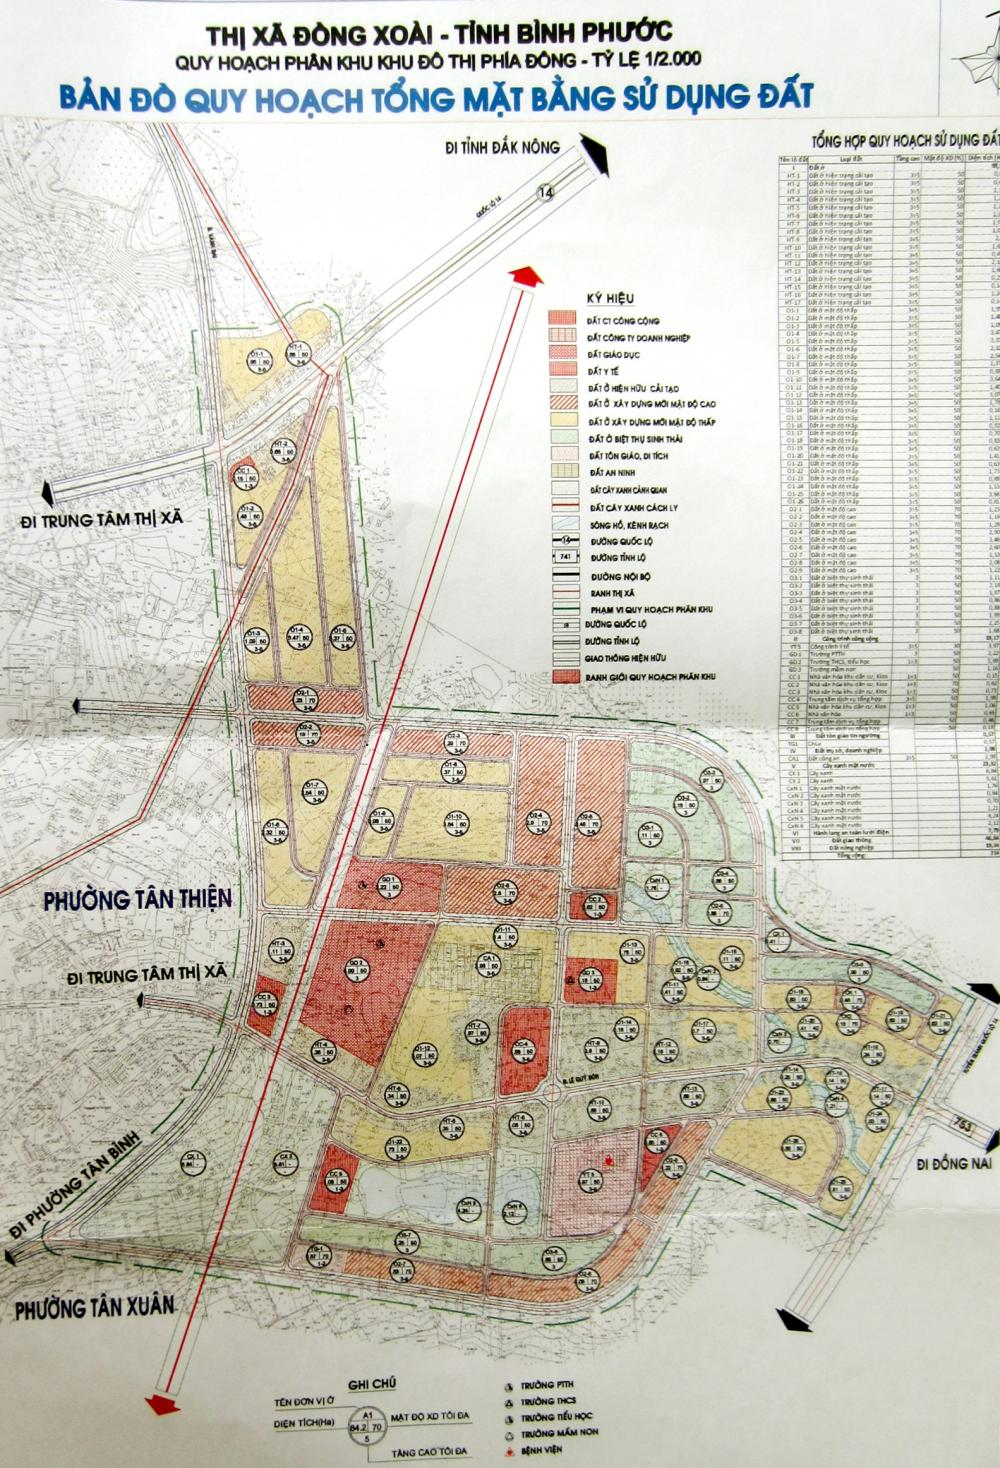 Bình Phước: Quy hoạch khu đô thị phía Đông thị xã Đồng Xoài với 214 ha